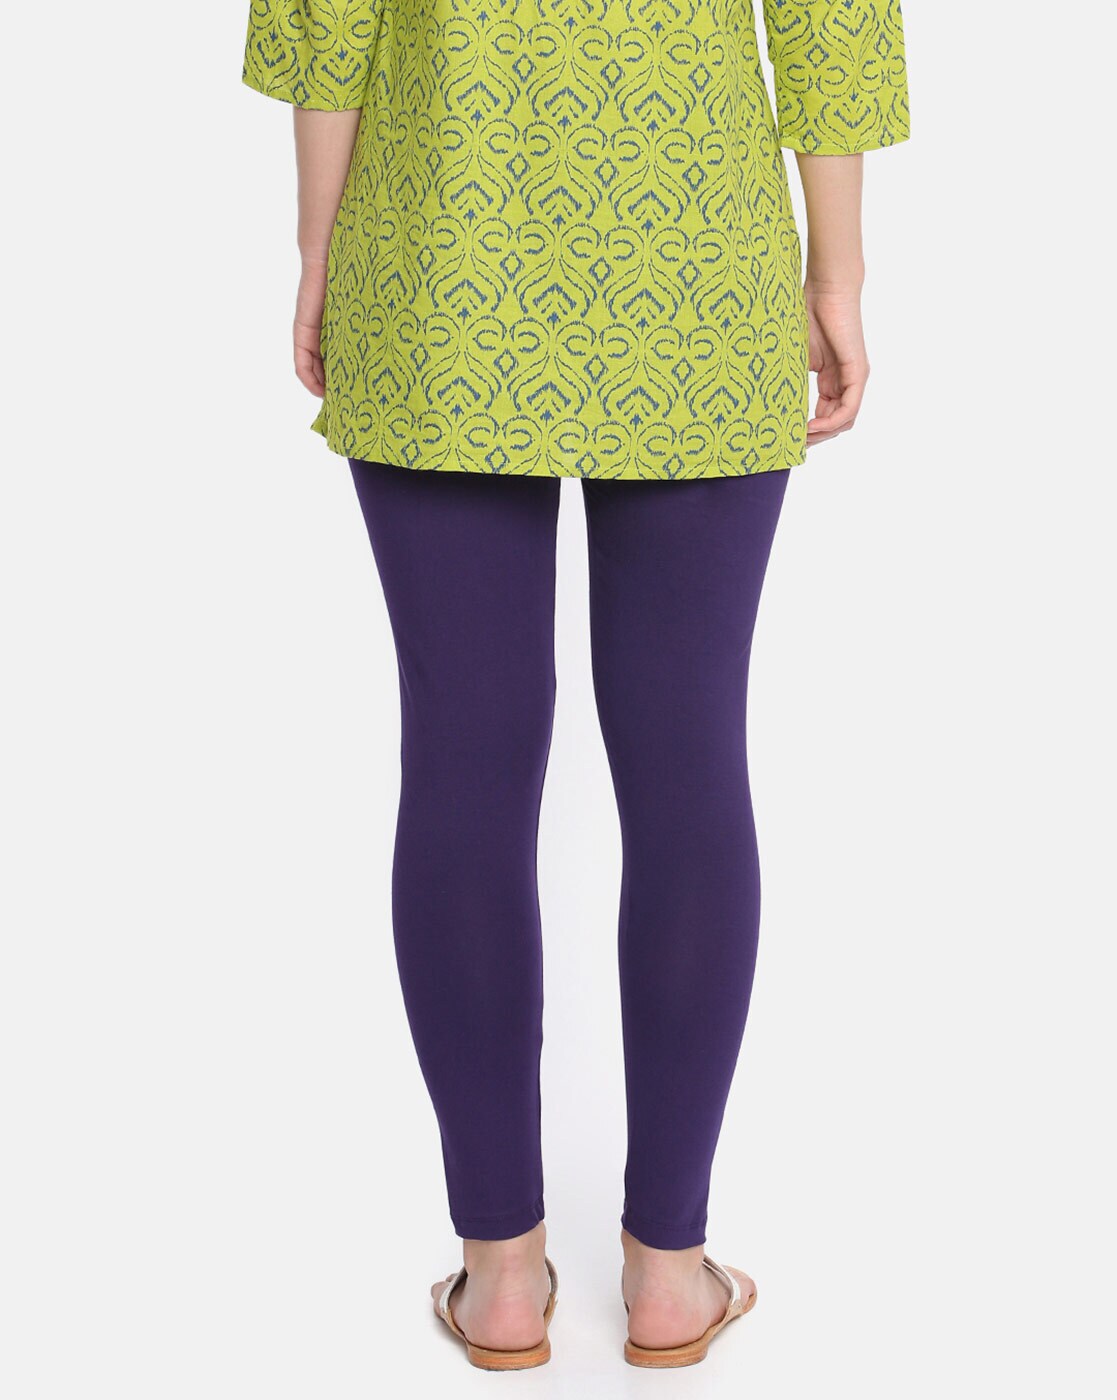 Buy Purple Leggings for Women by DOLLAR MISSY Online